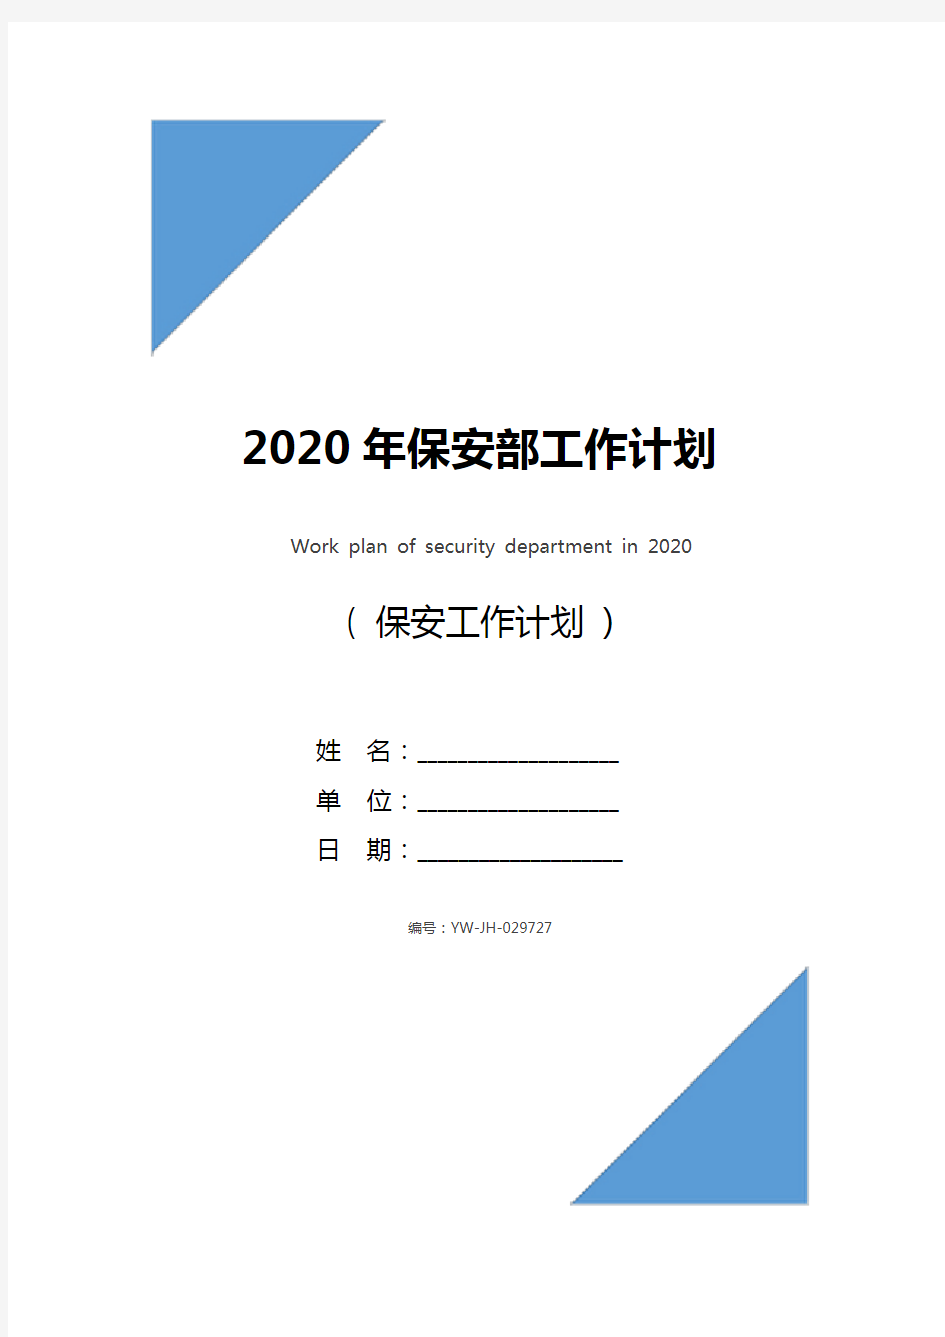 2020年保安部工作计划